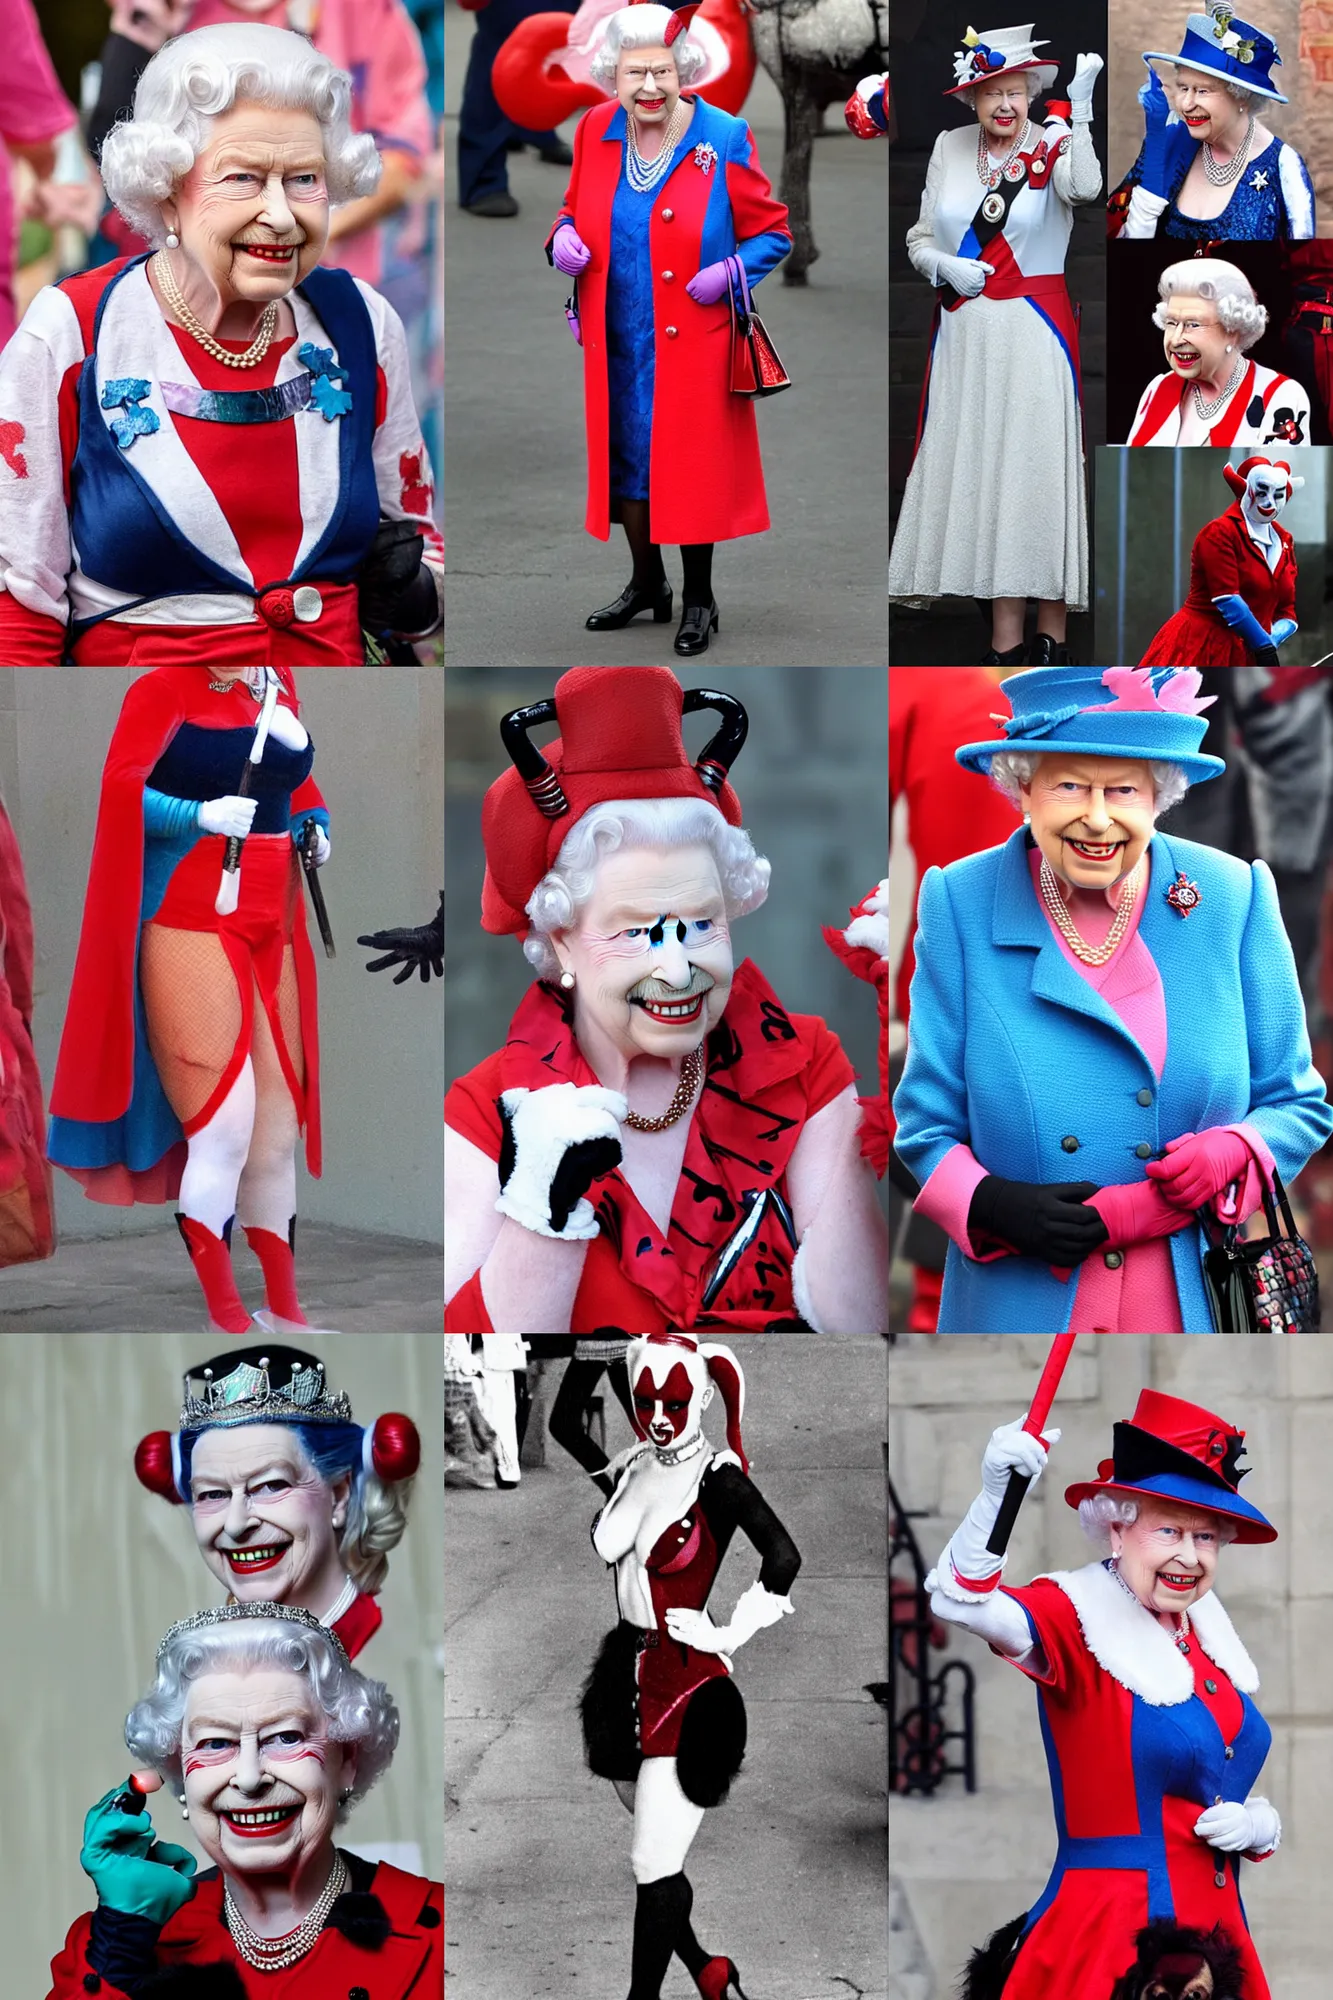 Prompt: Queen Elizabeth dressed as Harley Quinn